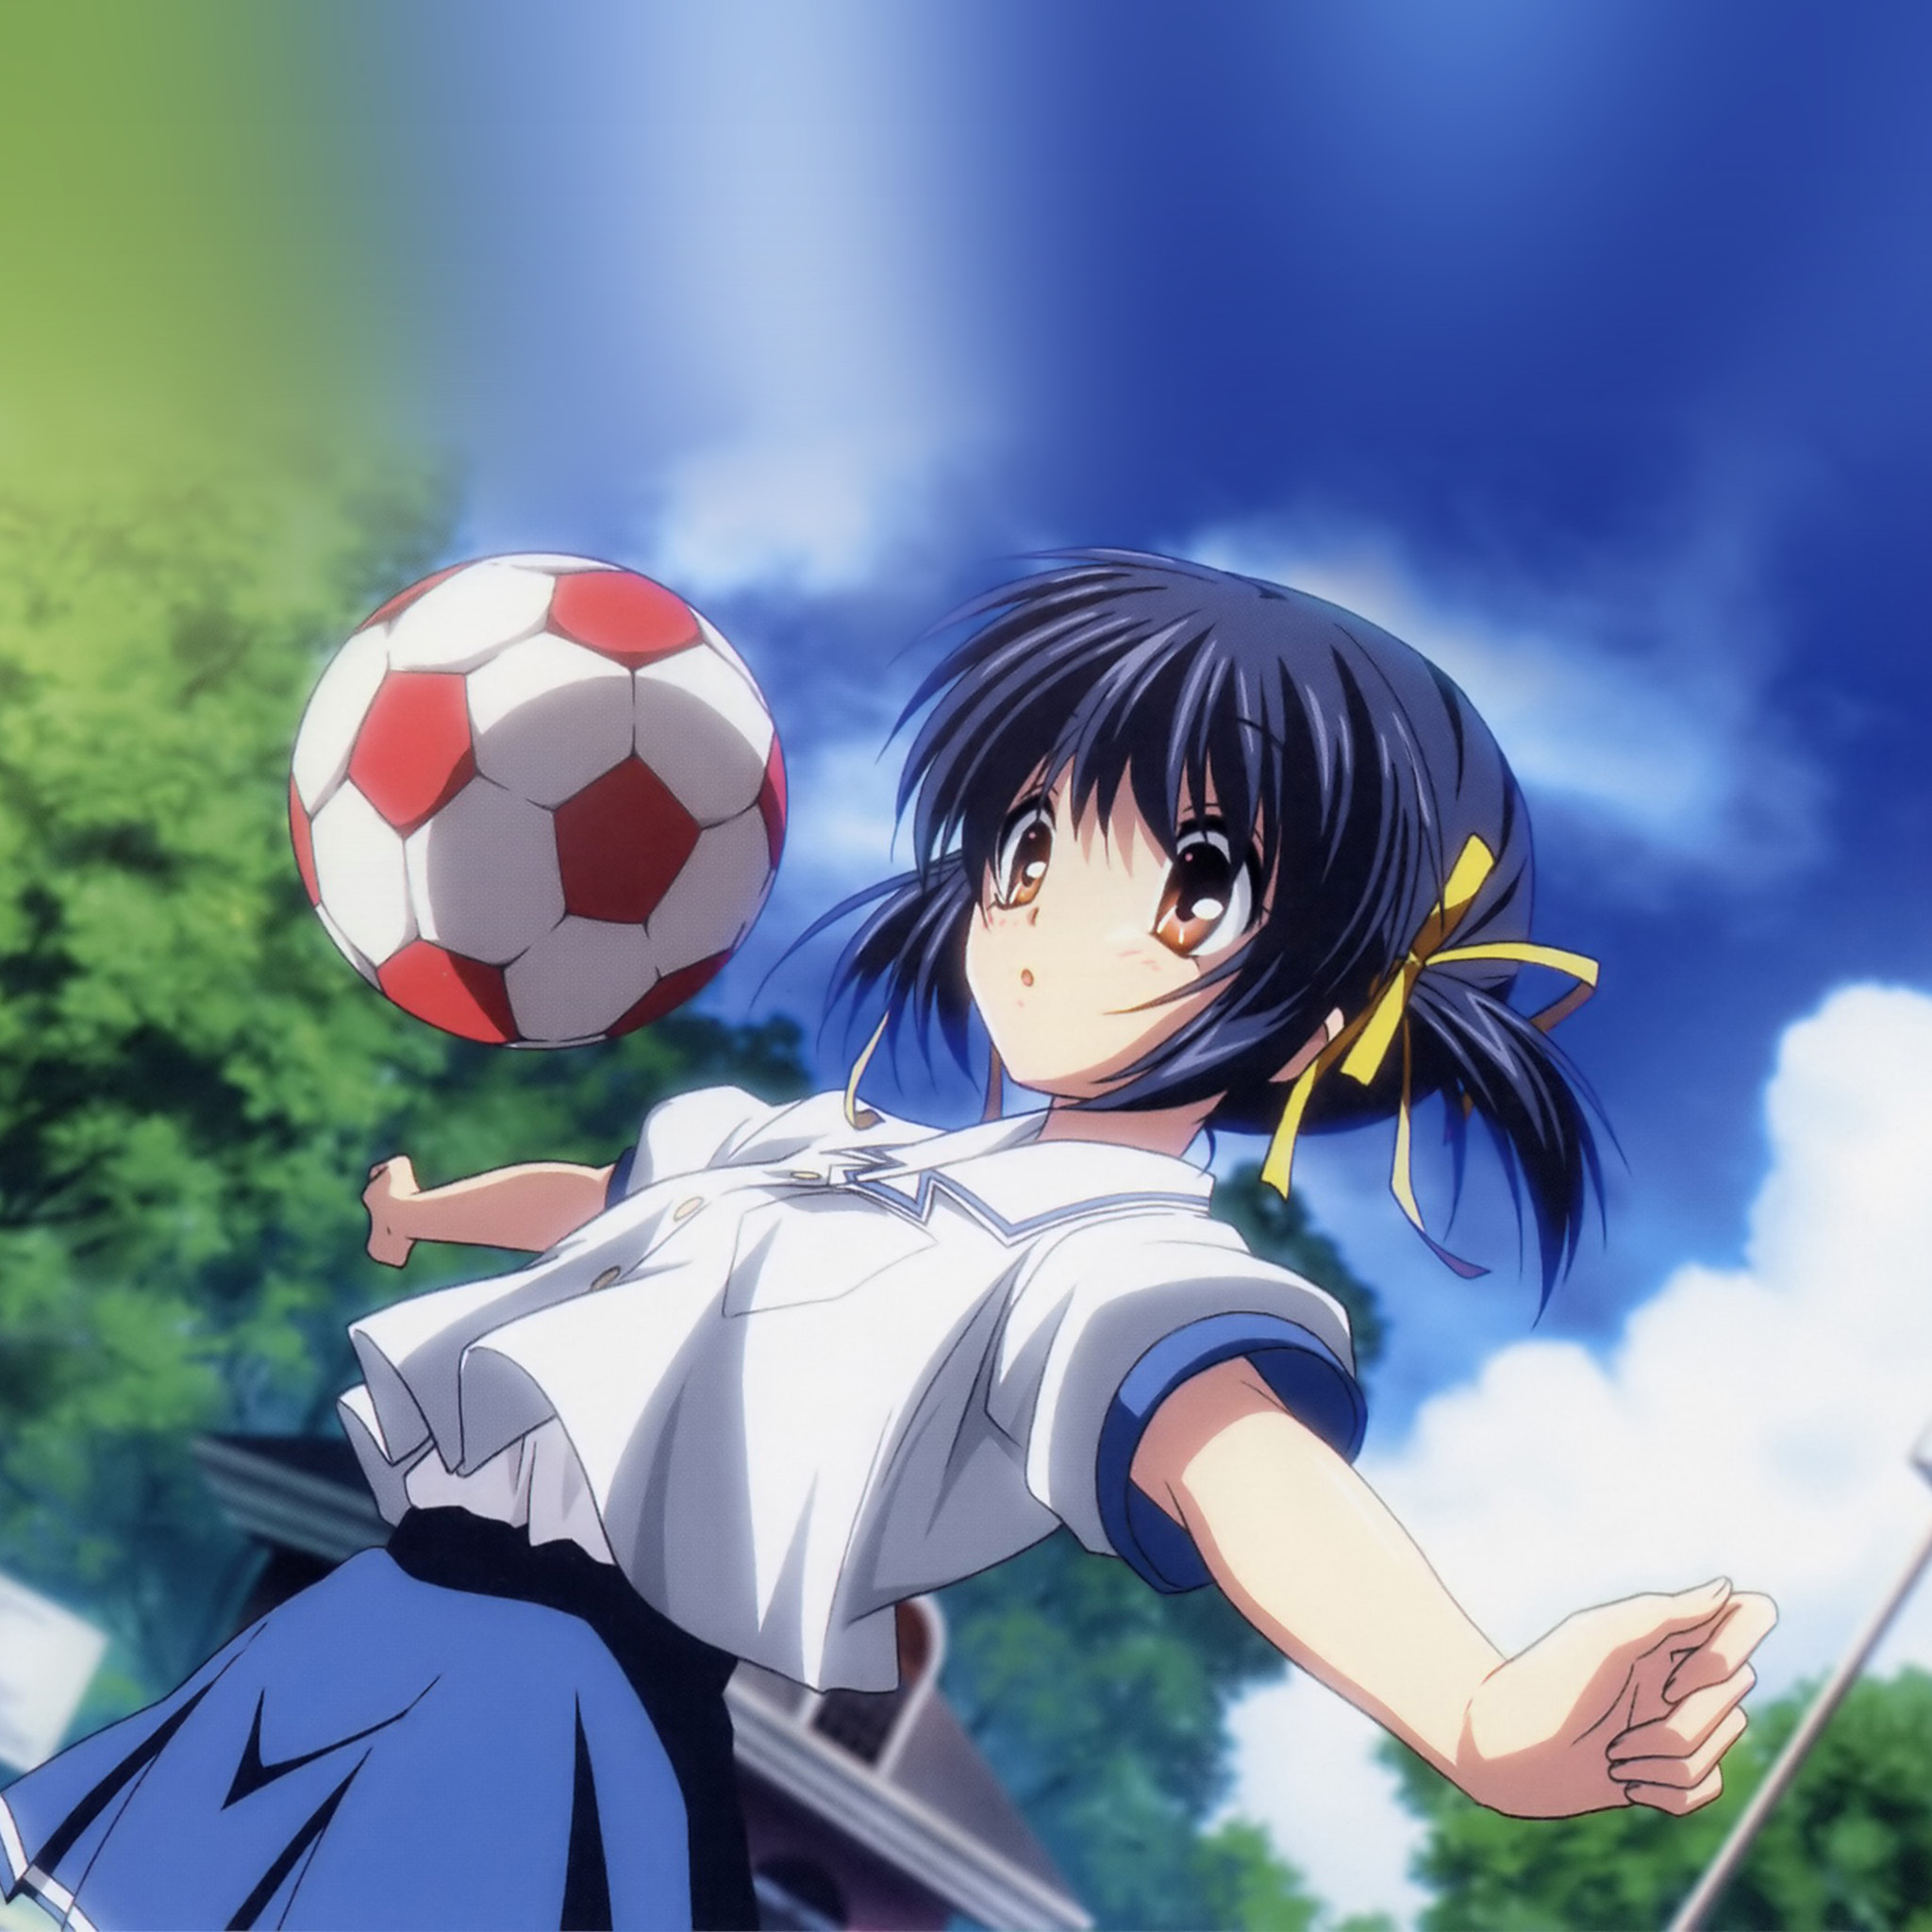 cute anime wallpaper for android,cartoon,anime,animated cartoon,football,sky